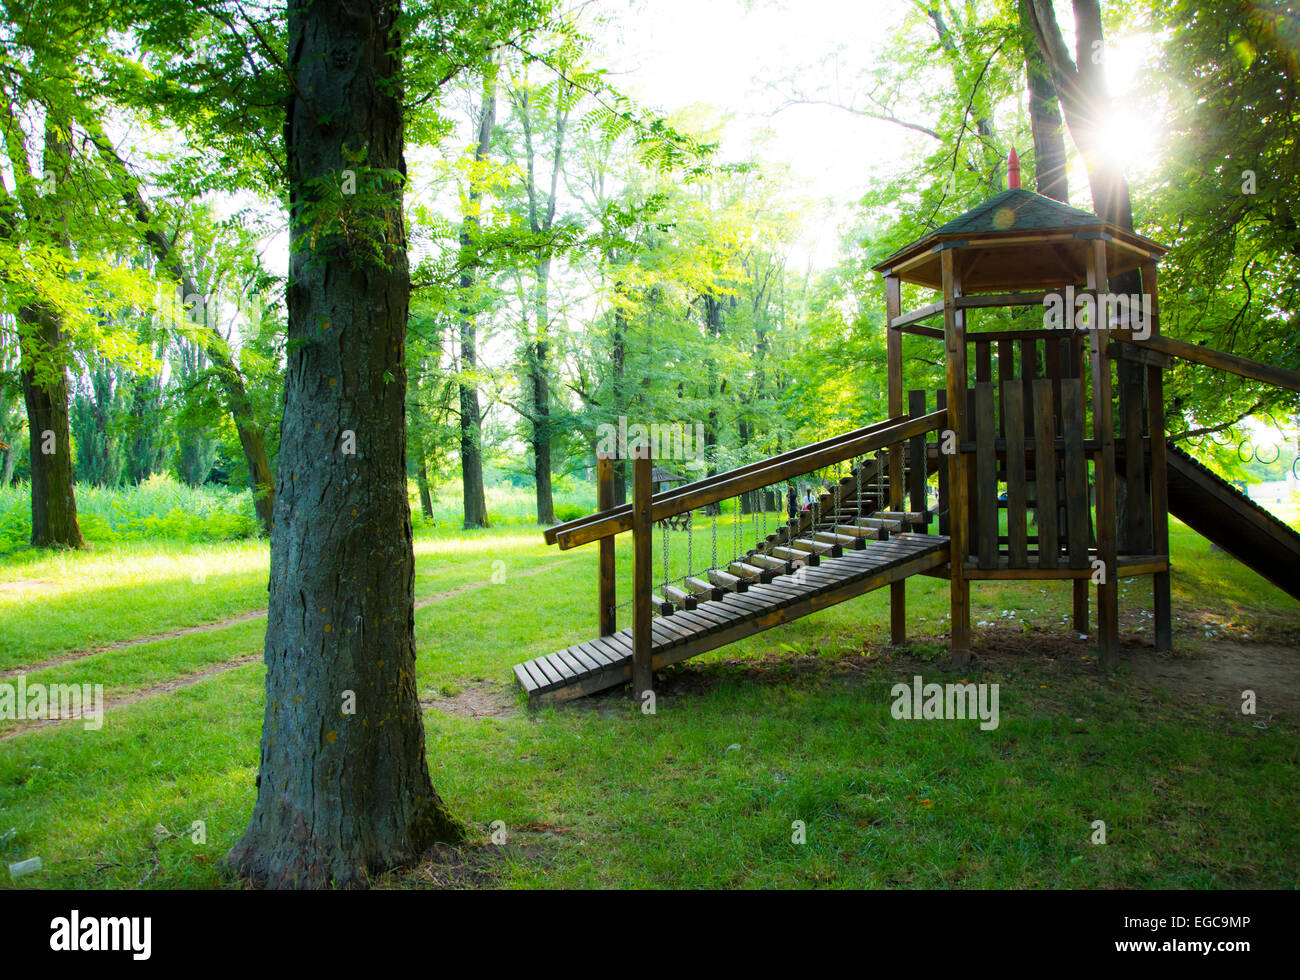 Children wooden playground in beautiful nature scenery Stock Photo